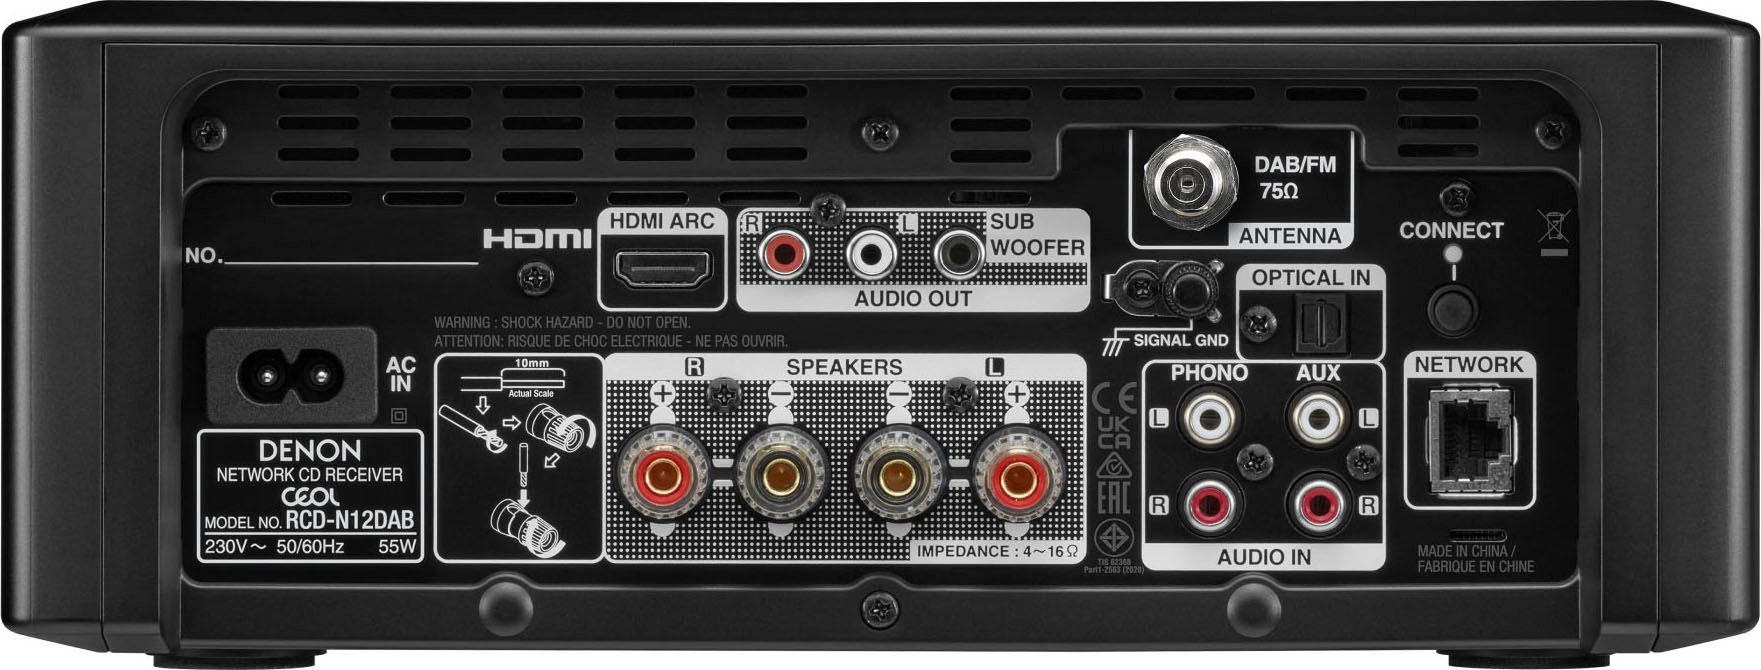 Denon (Digitalradio W) CEOL N12DAB schwarz FM-Tuner, UKW 130 (DAB), RDS, mit Stereoanlage